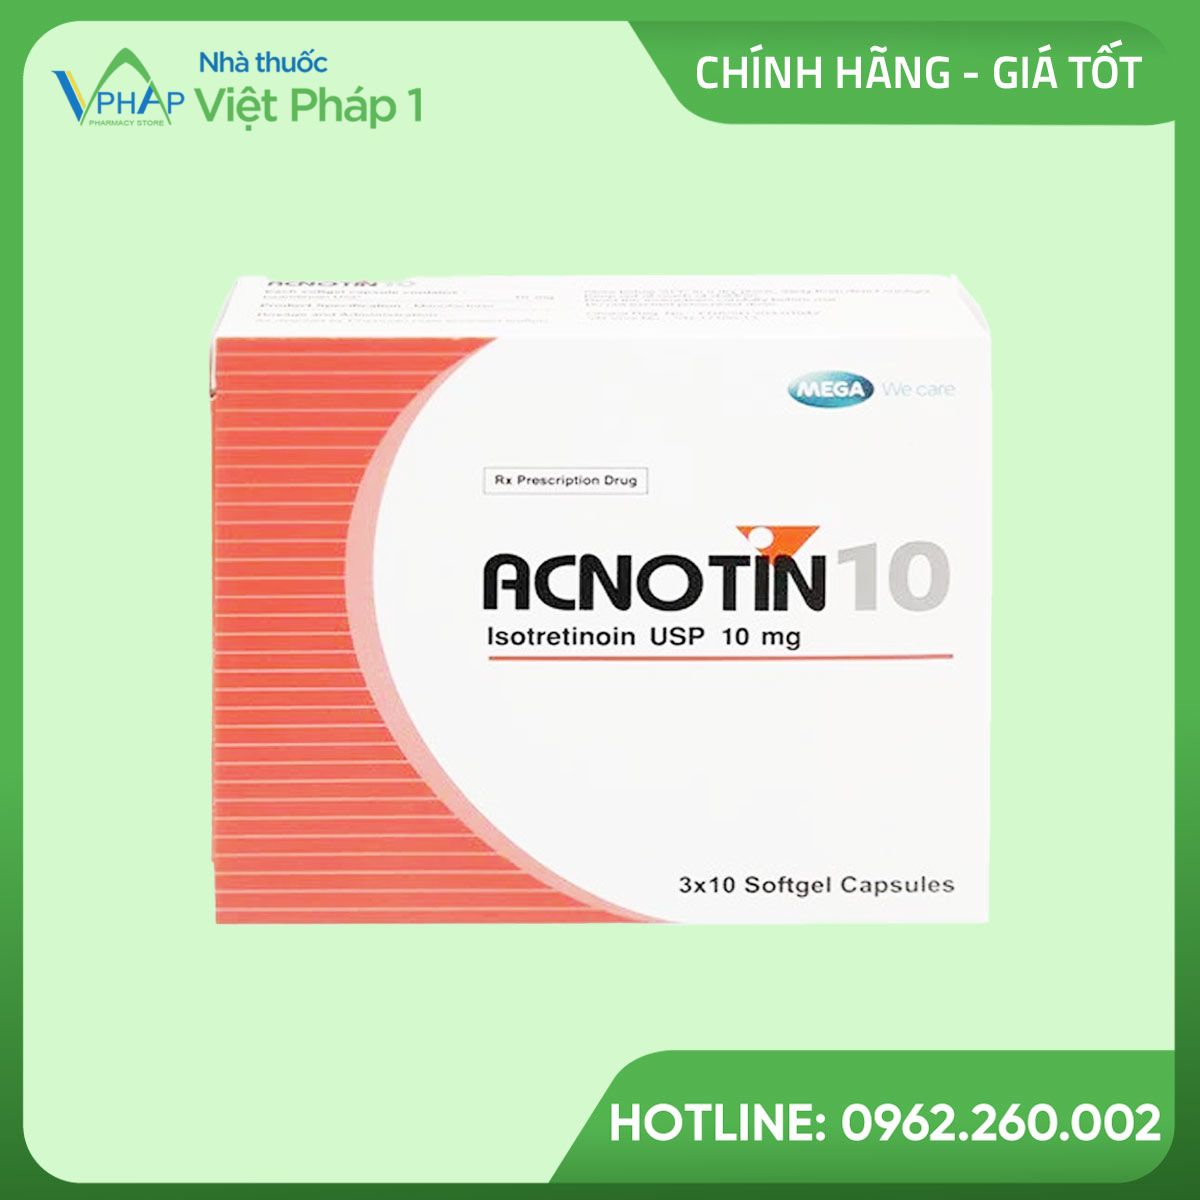 Hình ảnh của hộp thuốc Acnotin 10mg